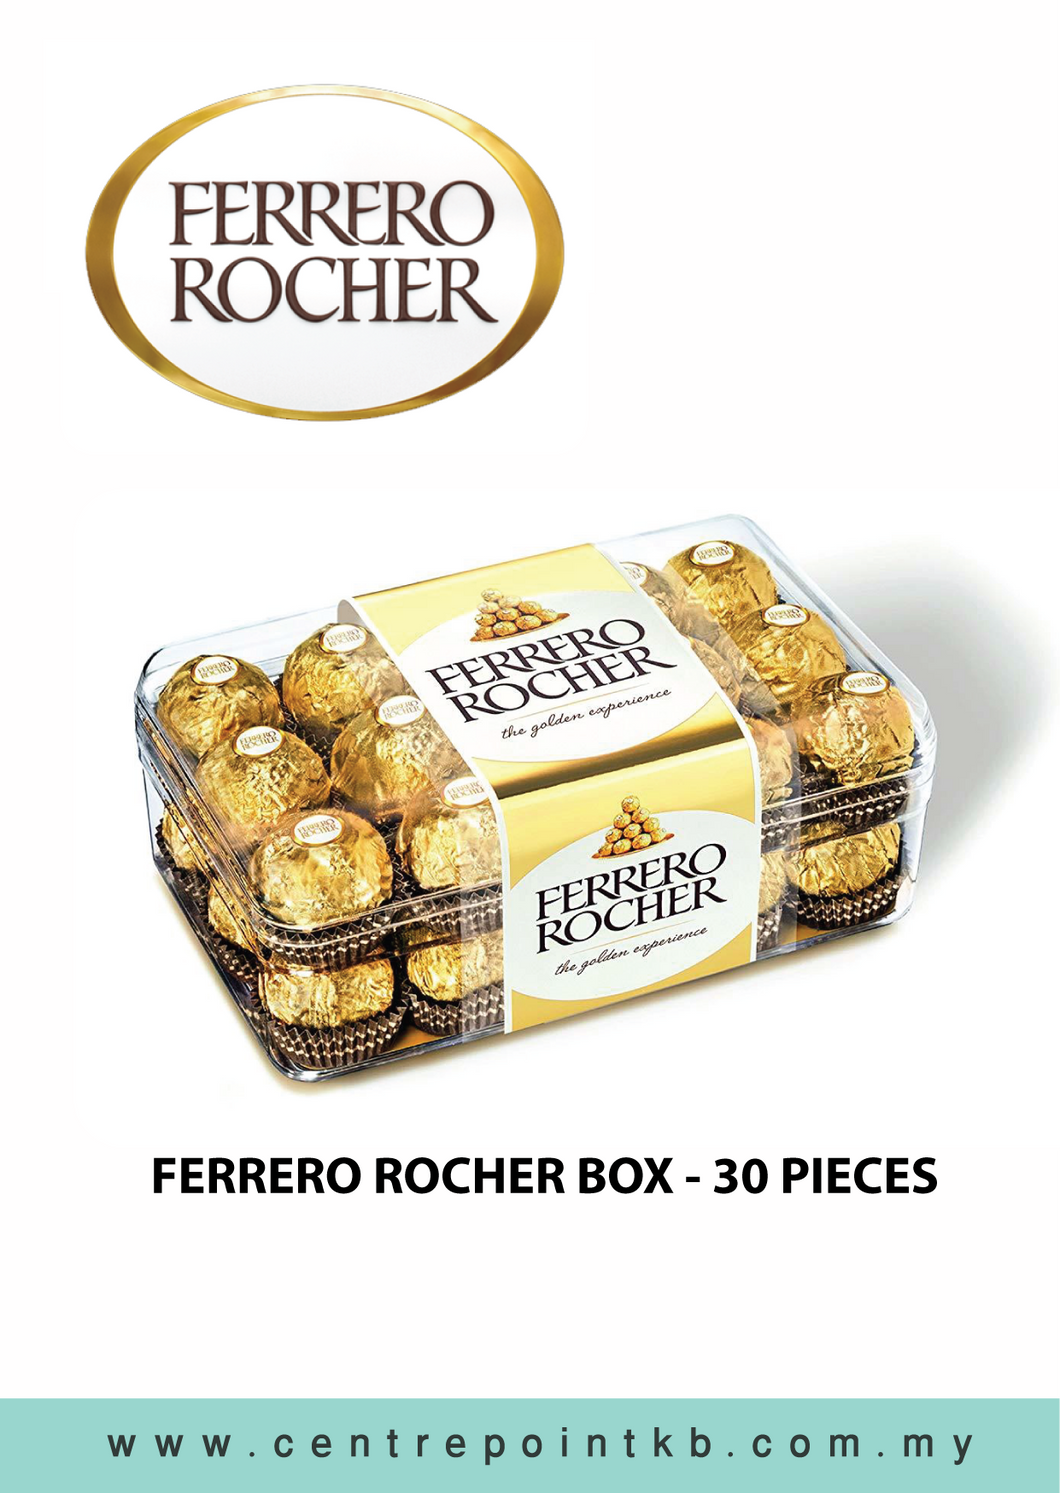 Ferrero Rocher in Box - 30 pieces (RM 65.00)